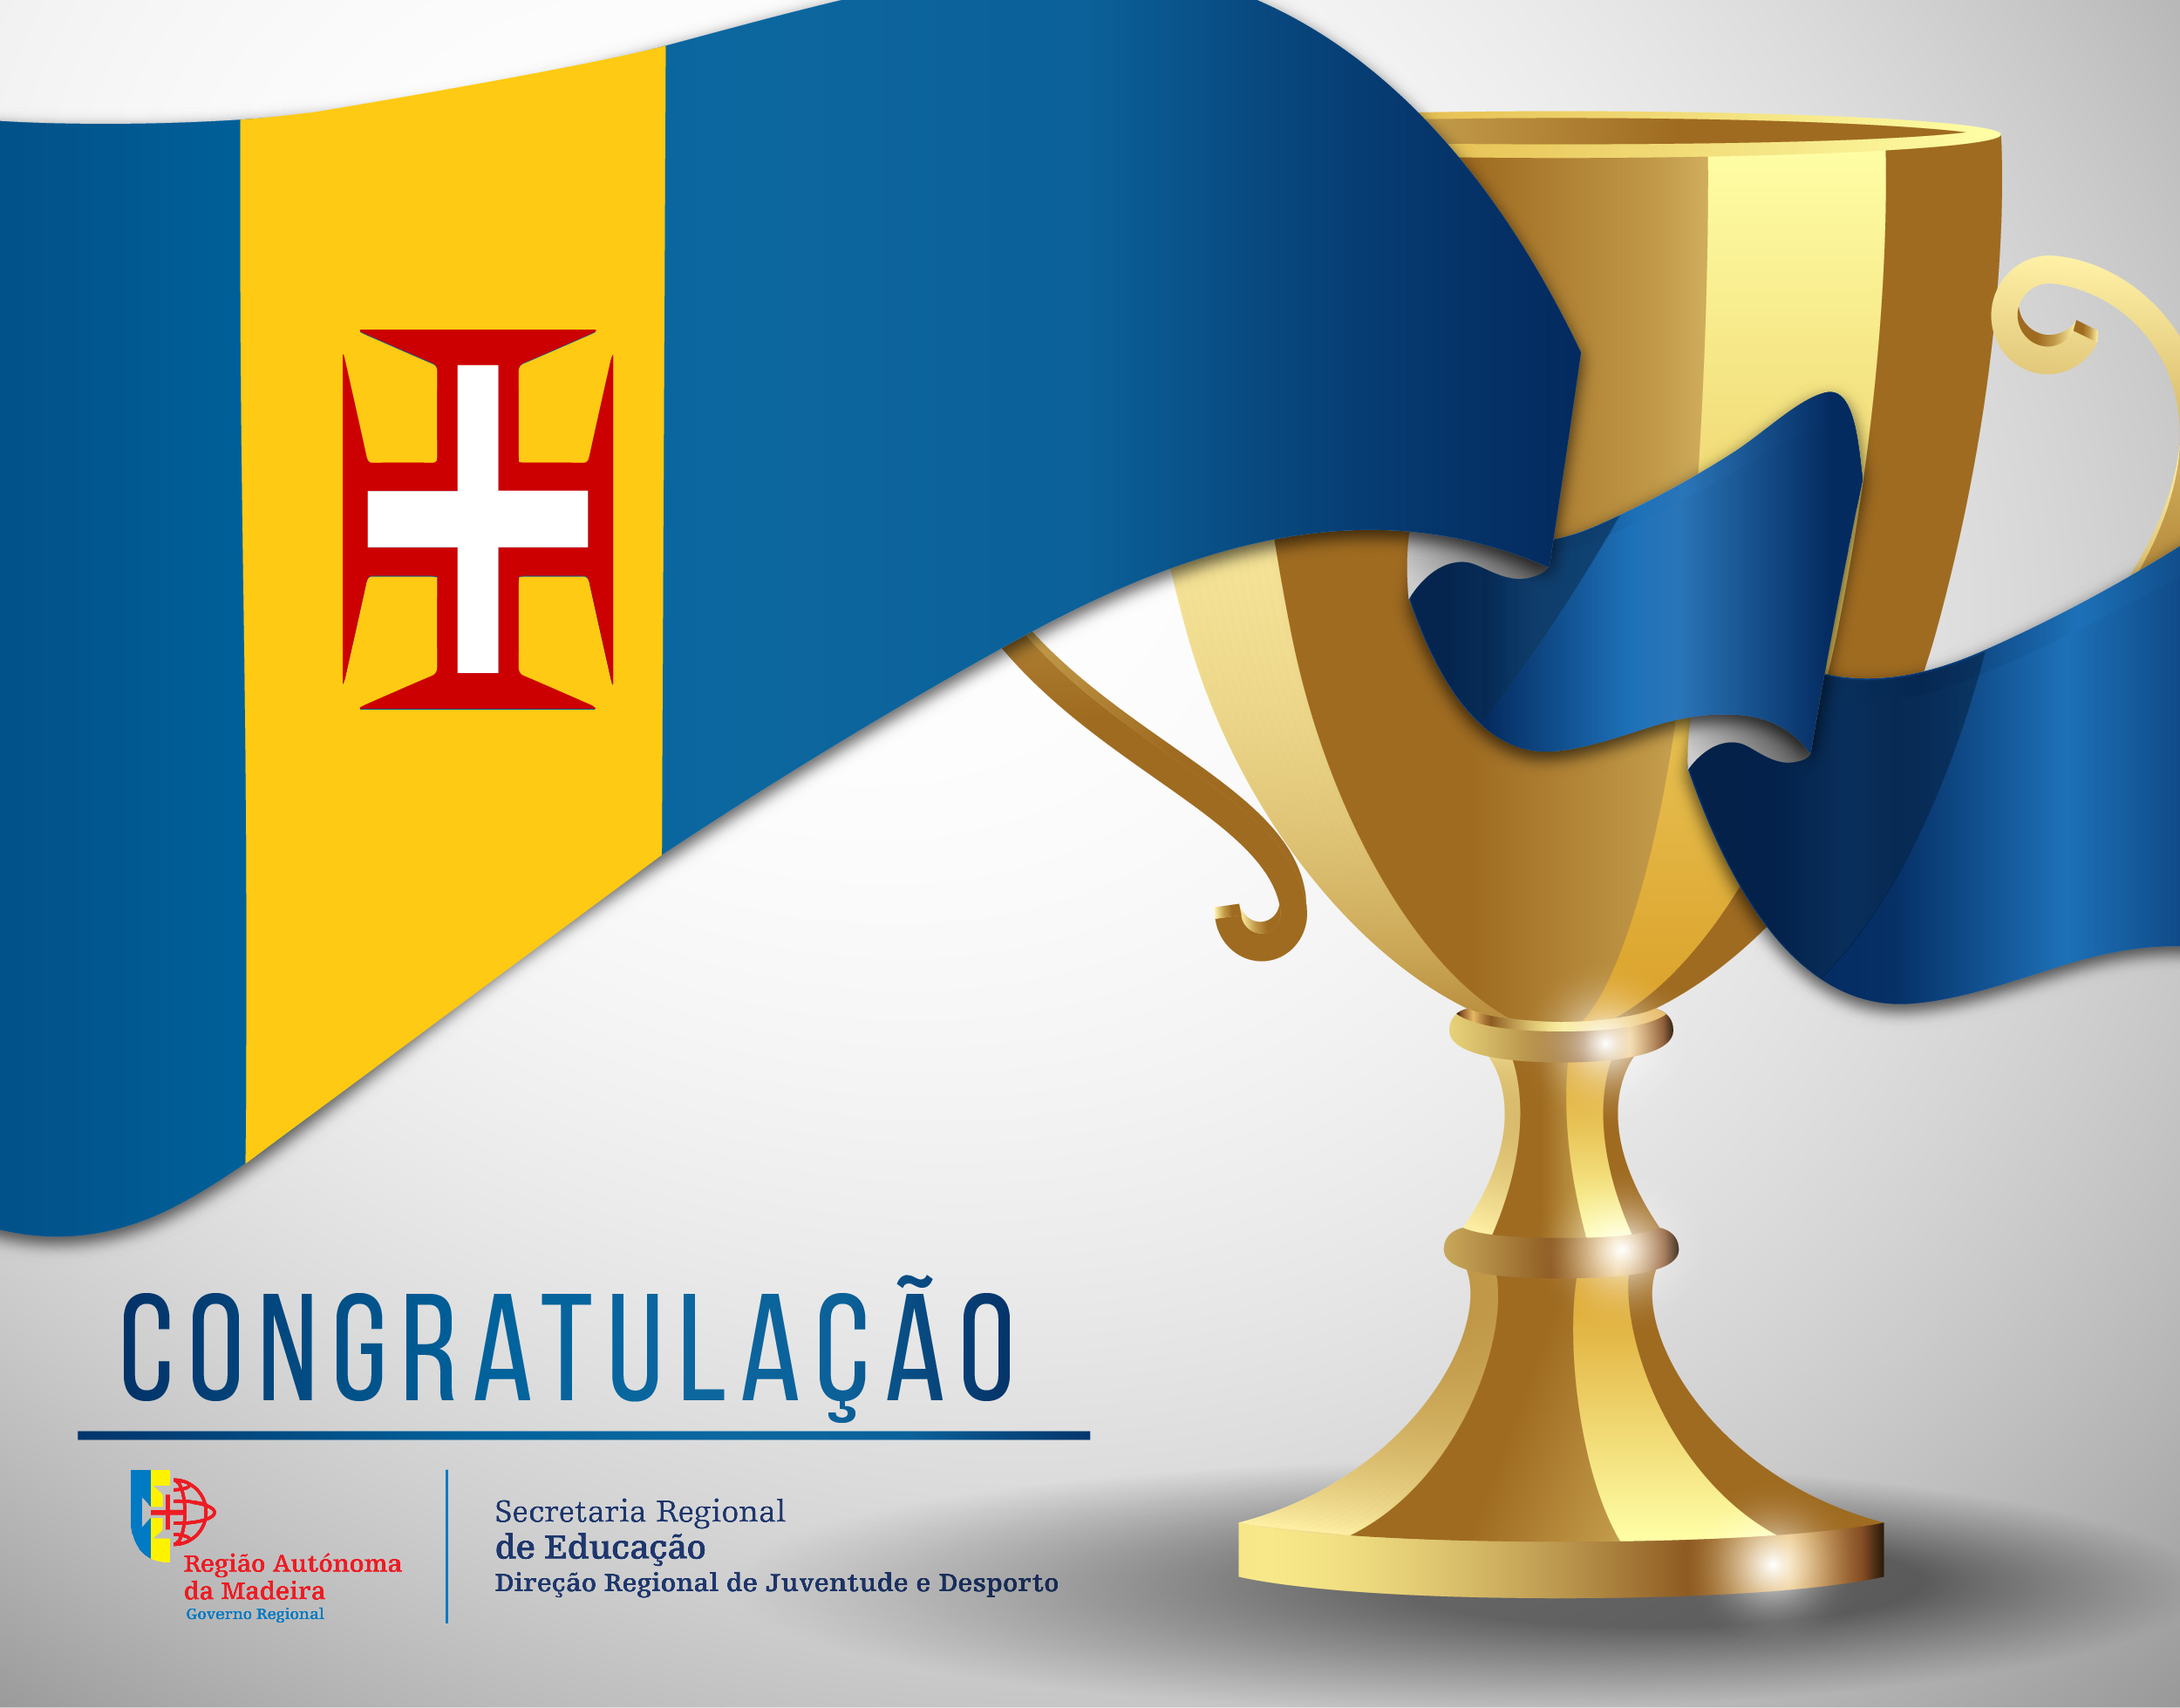 Congratulação - Nuno Pereira (SC Portugal)